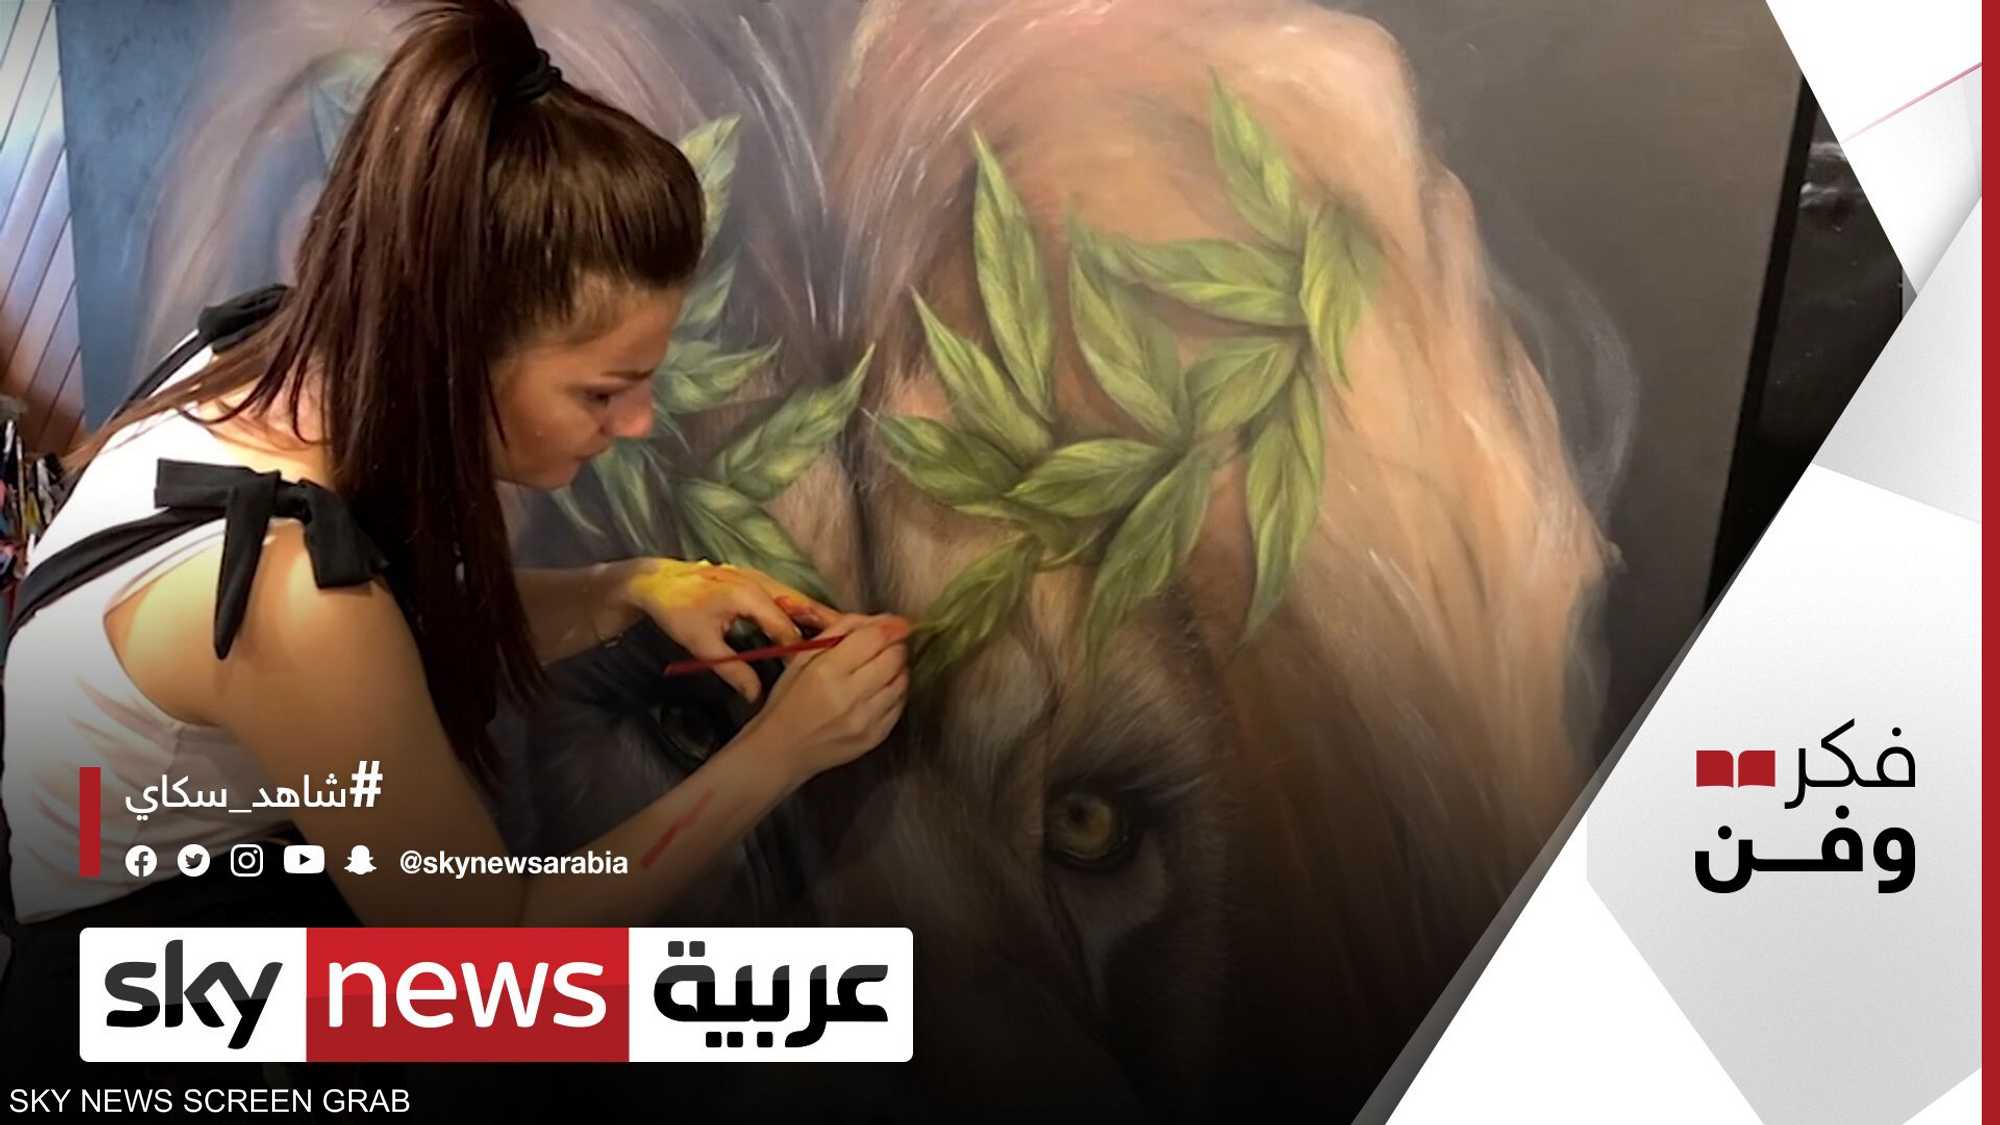 السورية رندة حجازي تحول المأساة إلى ملهاة في لوحاتها